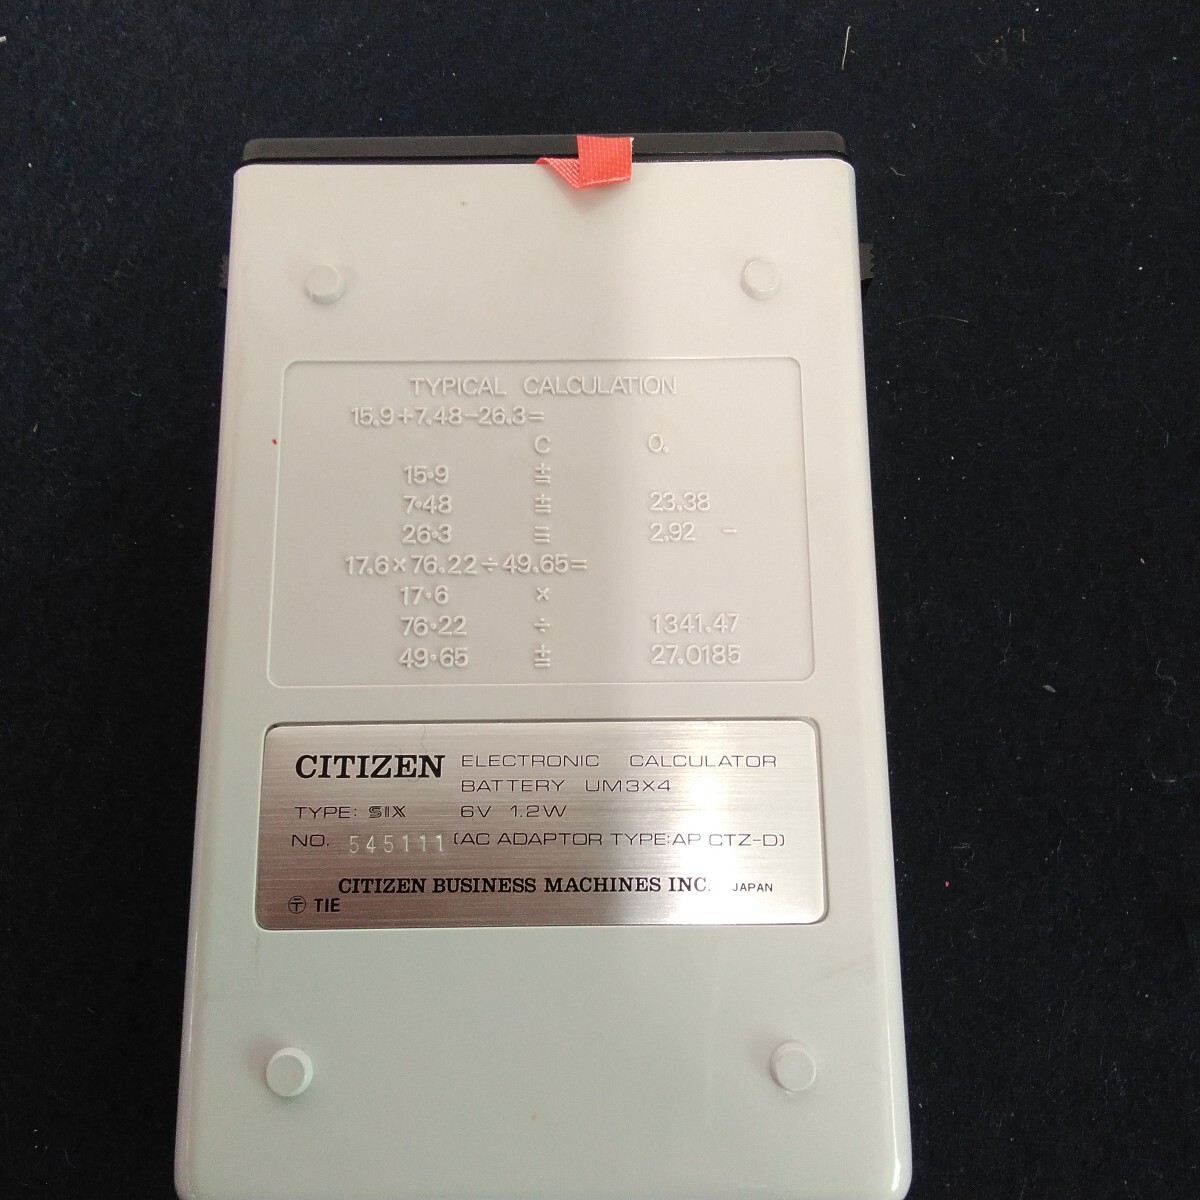 A742 CITIZEN SIX Citizen calculator Showa Retro electrification has confirmed 